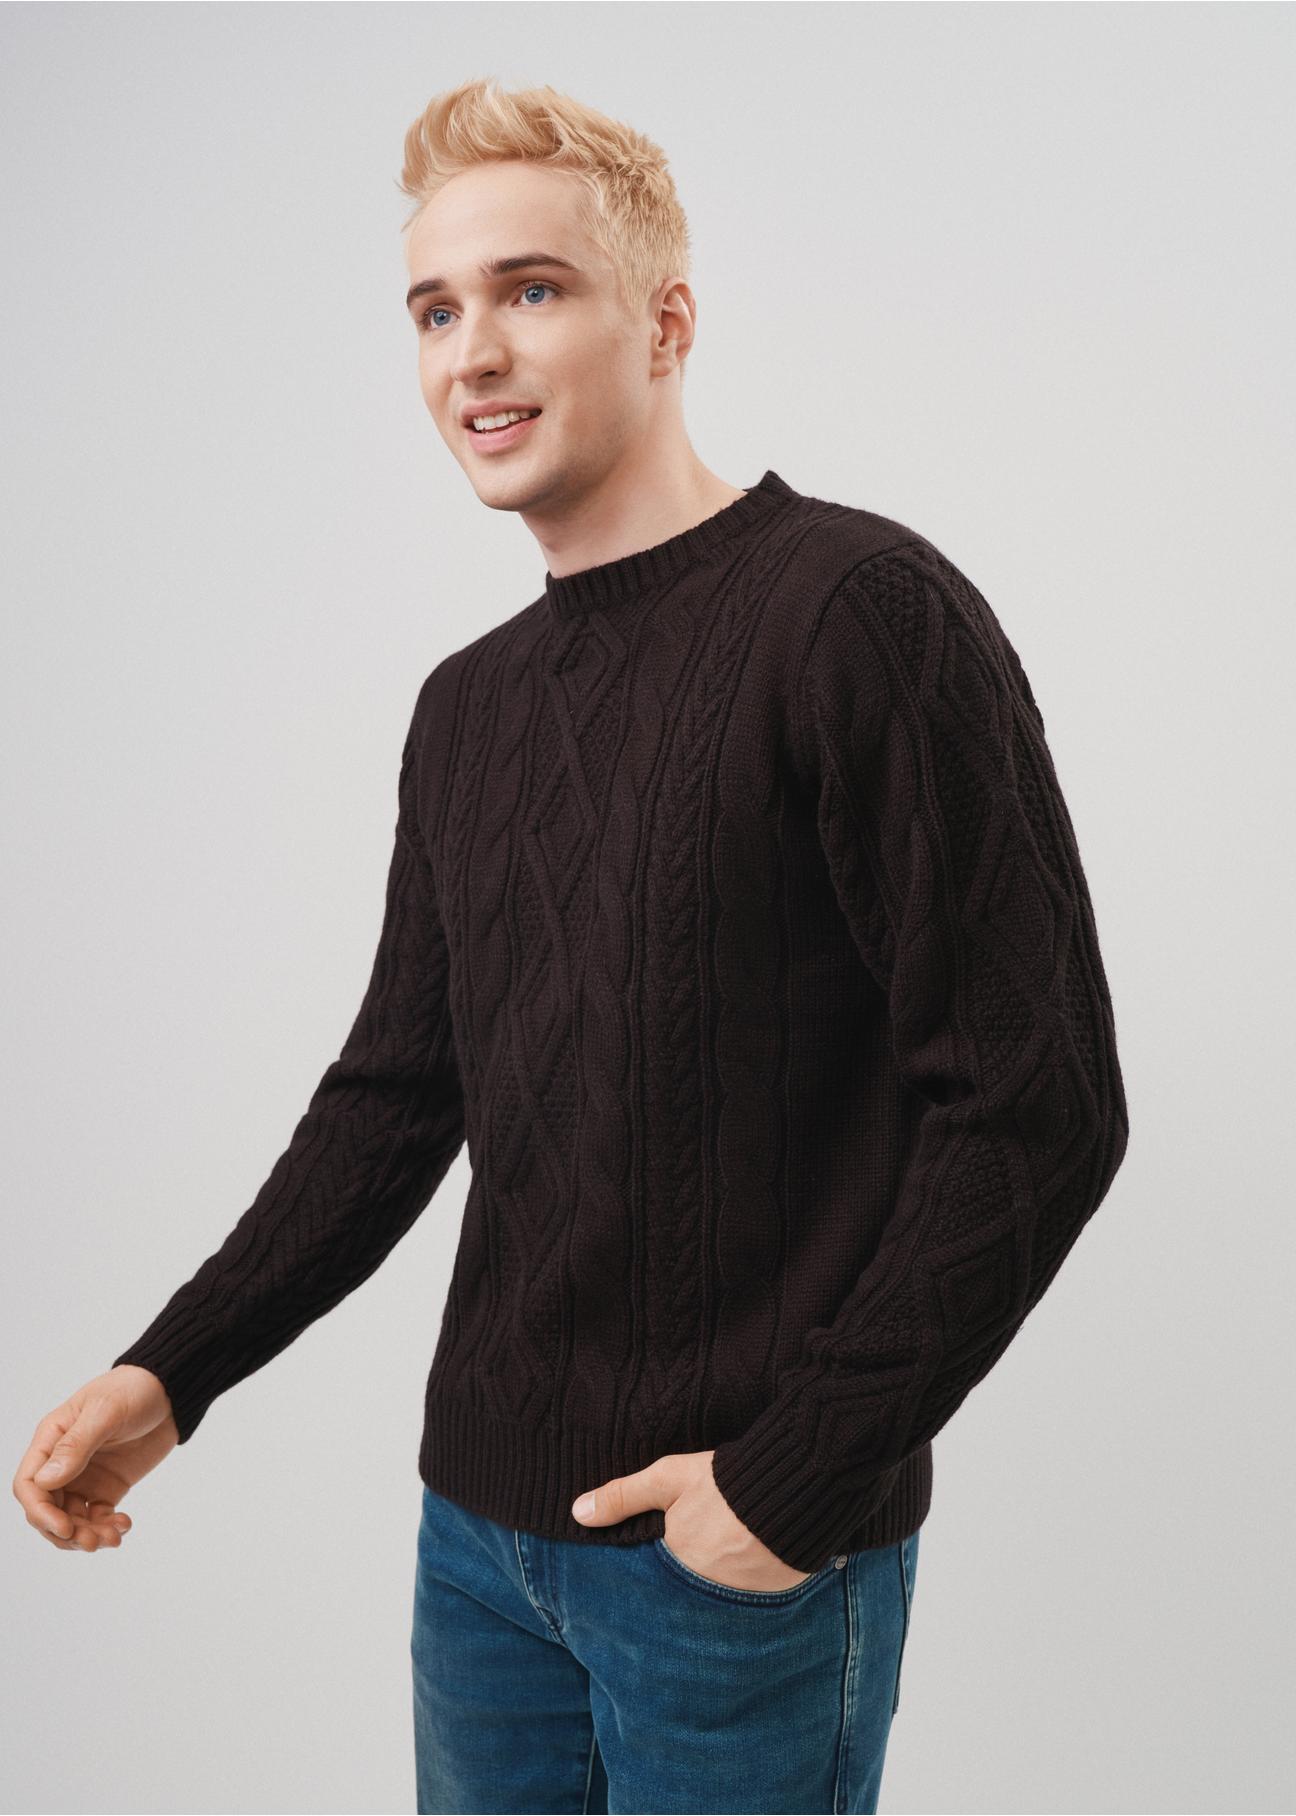 Czarny sweter męski SWEMT-0141-99(Z23)